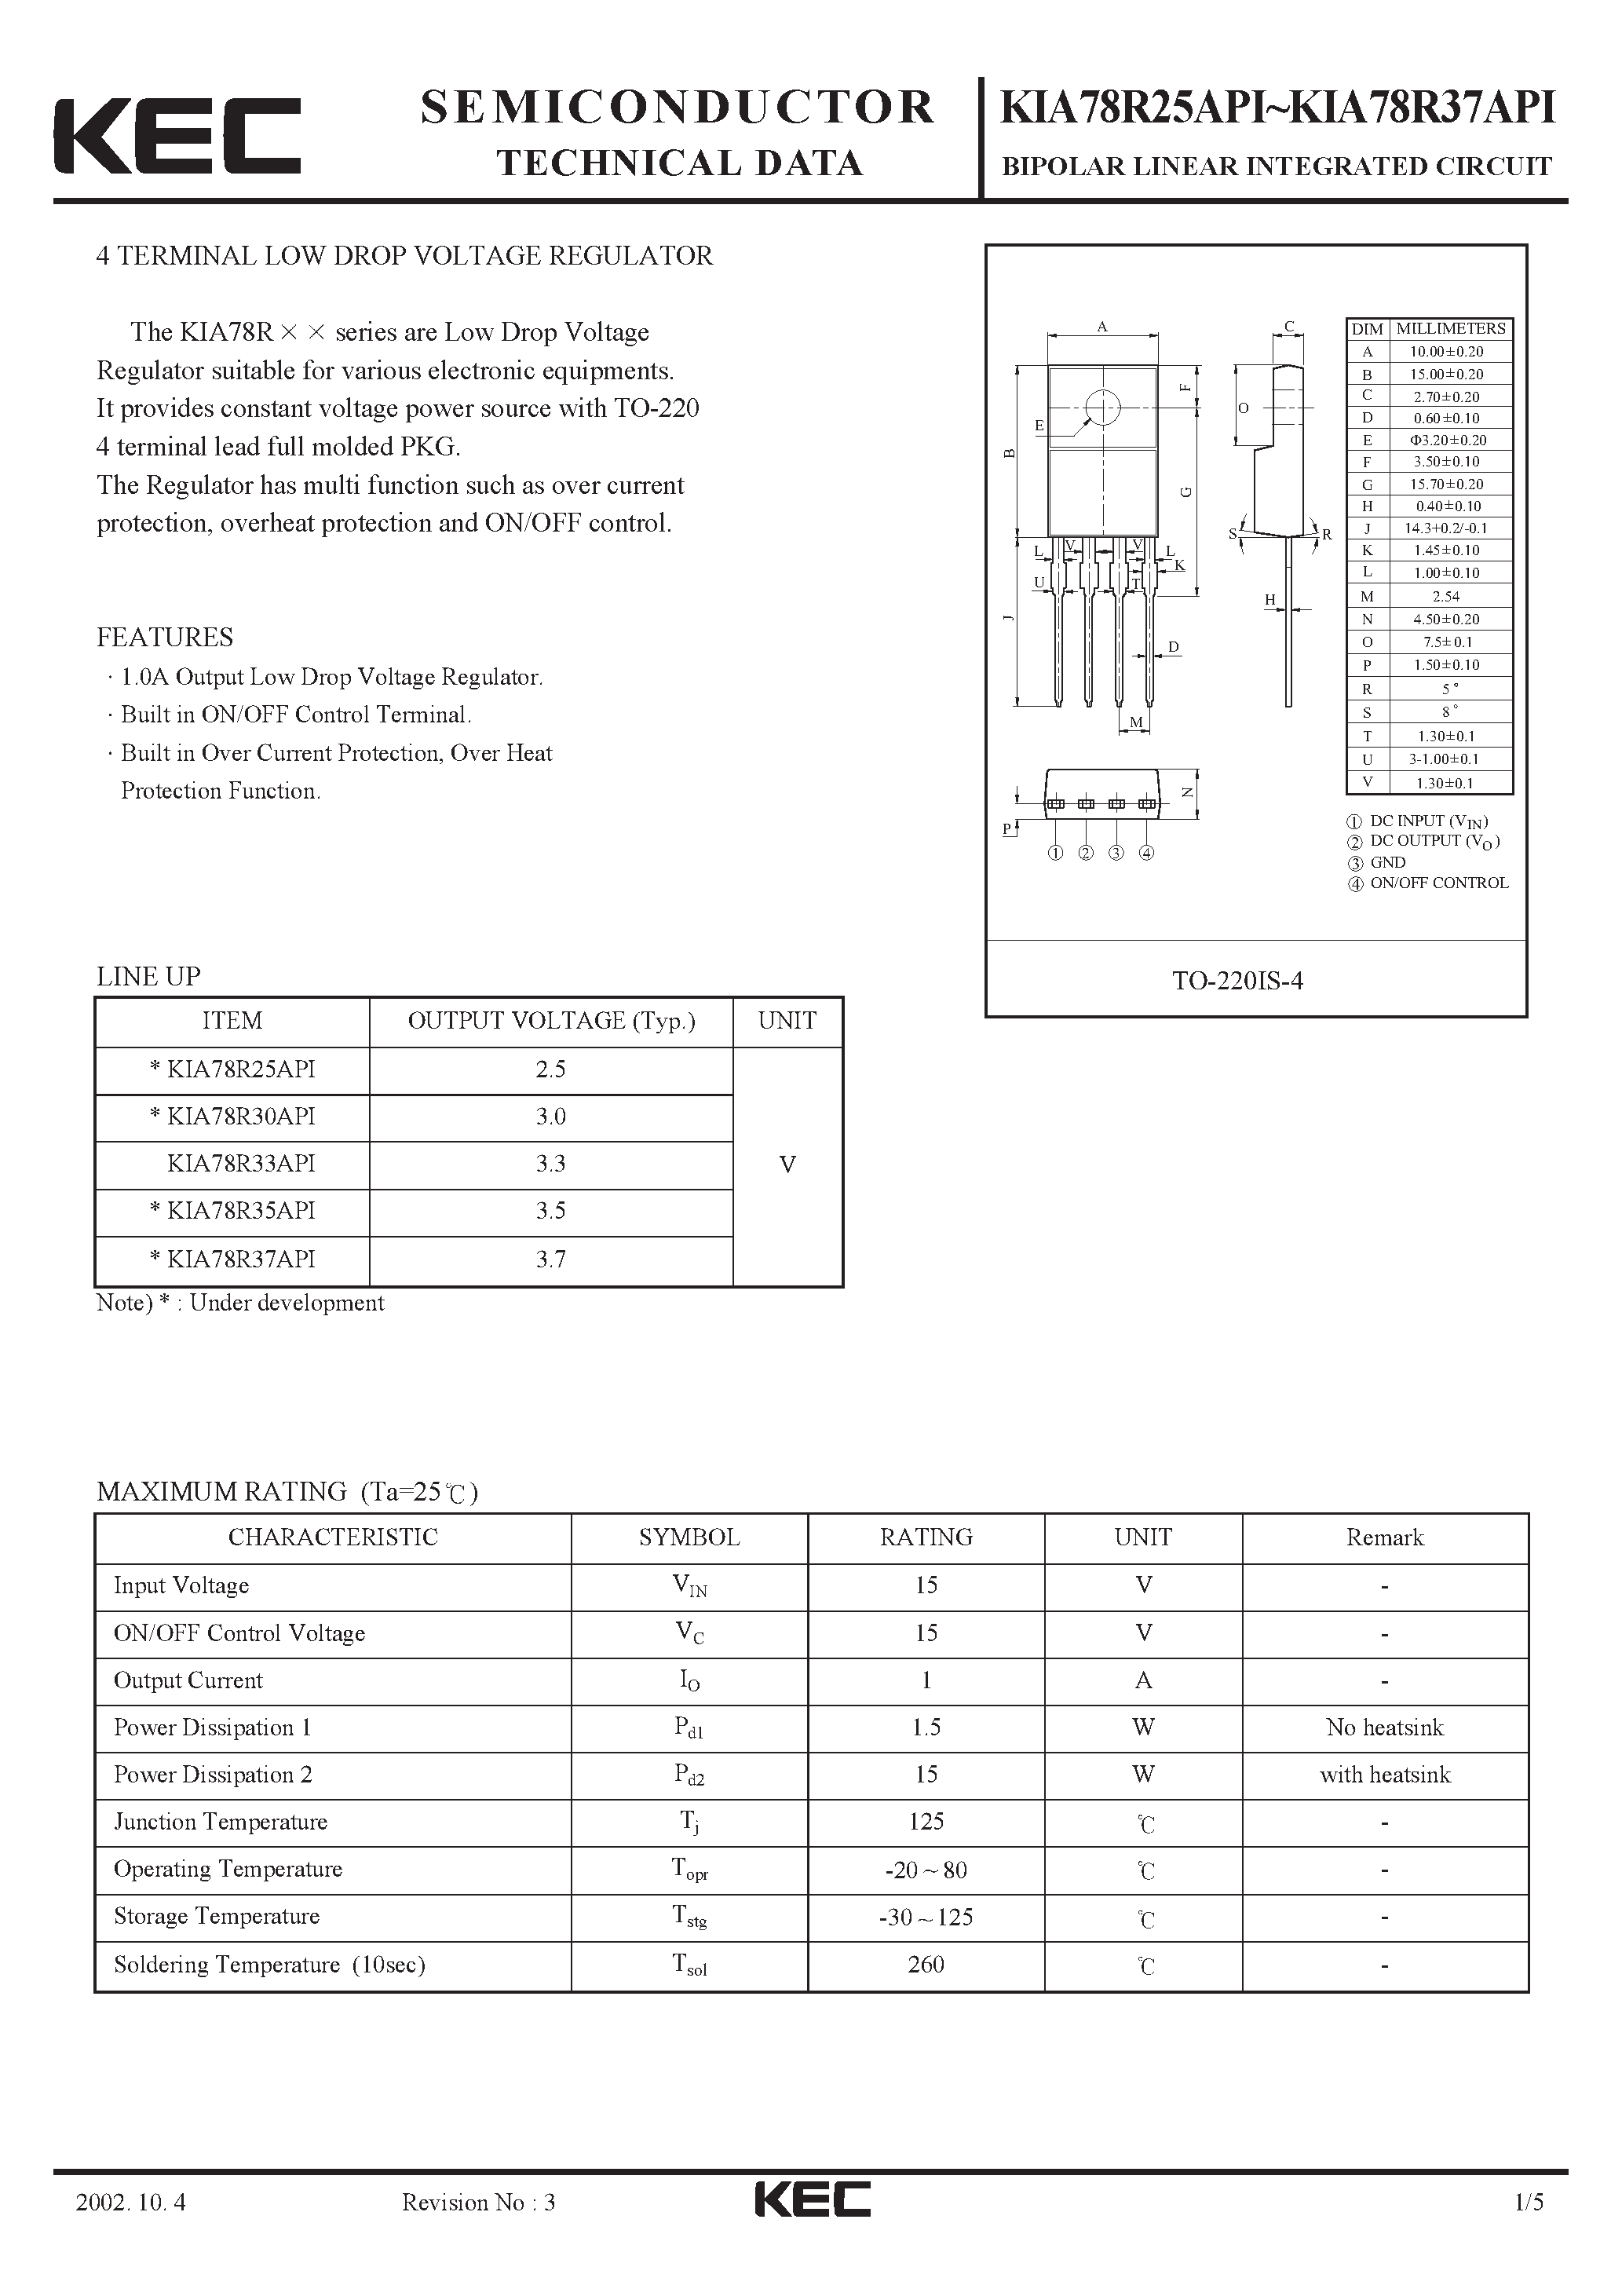 Datasheet KIA78R37API - BIPOLAR LINEAR INTEGRATED CIRCUIT (4 TERMINAL LOW DROP VOLTAGE REGULATOR) page 1